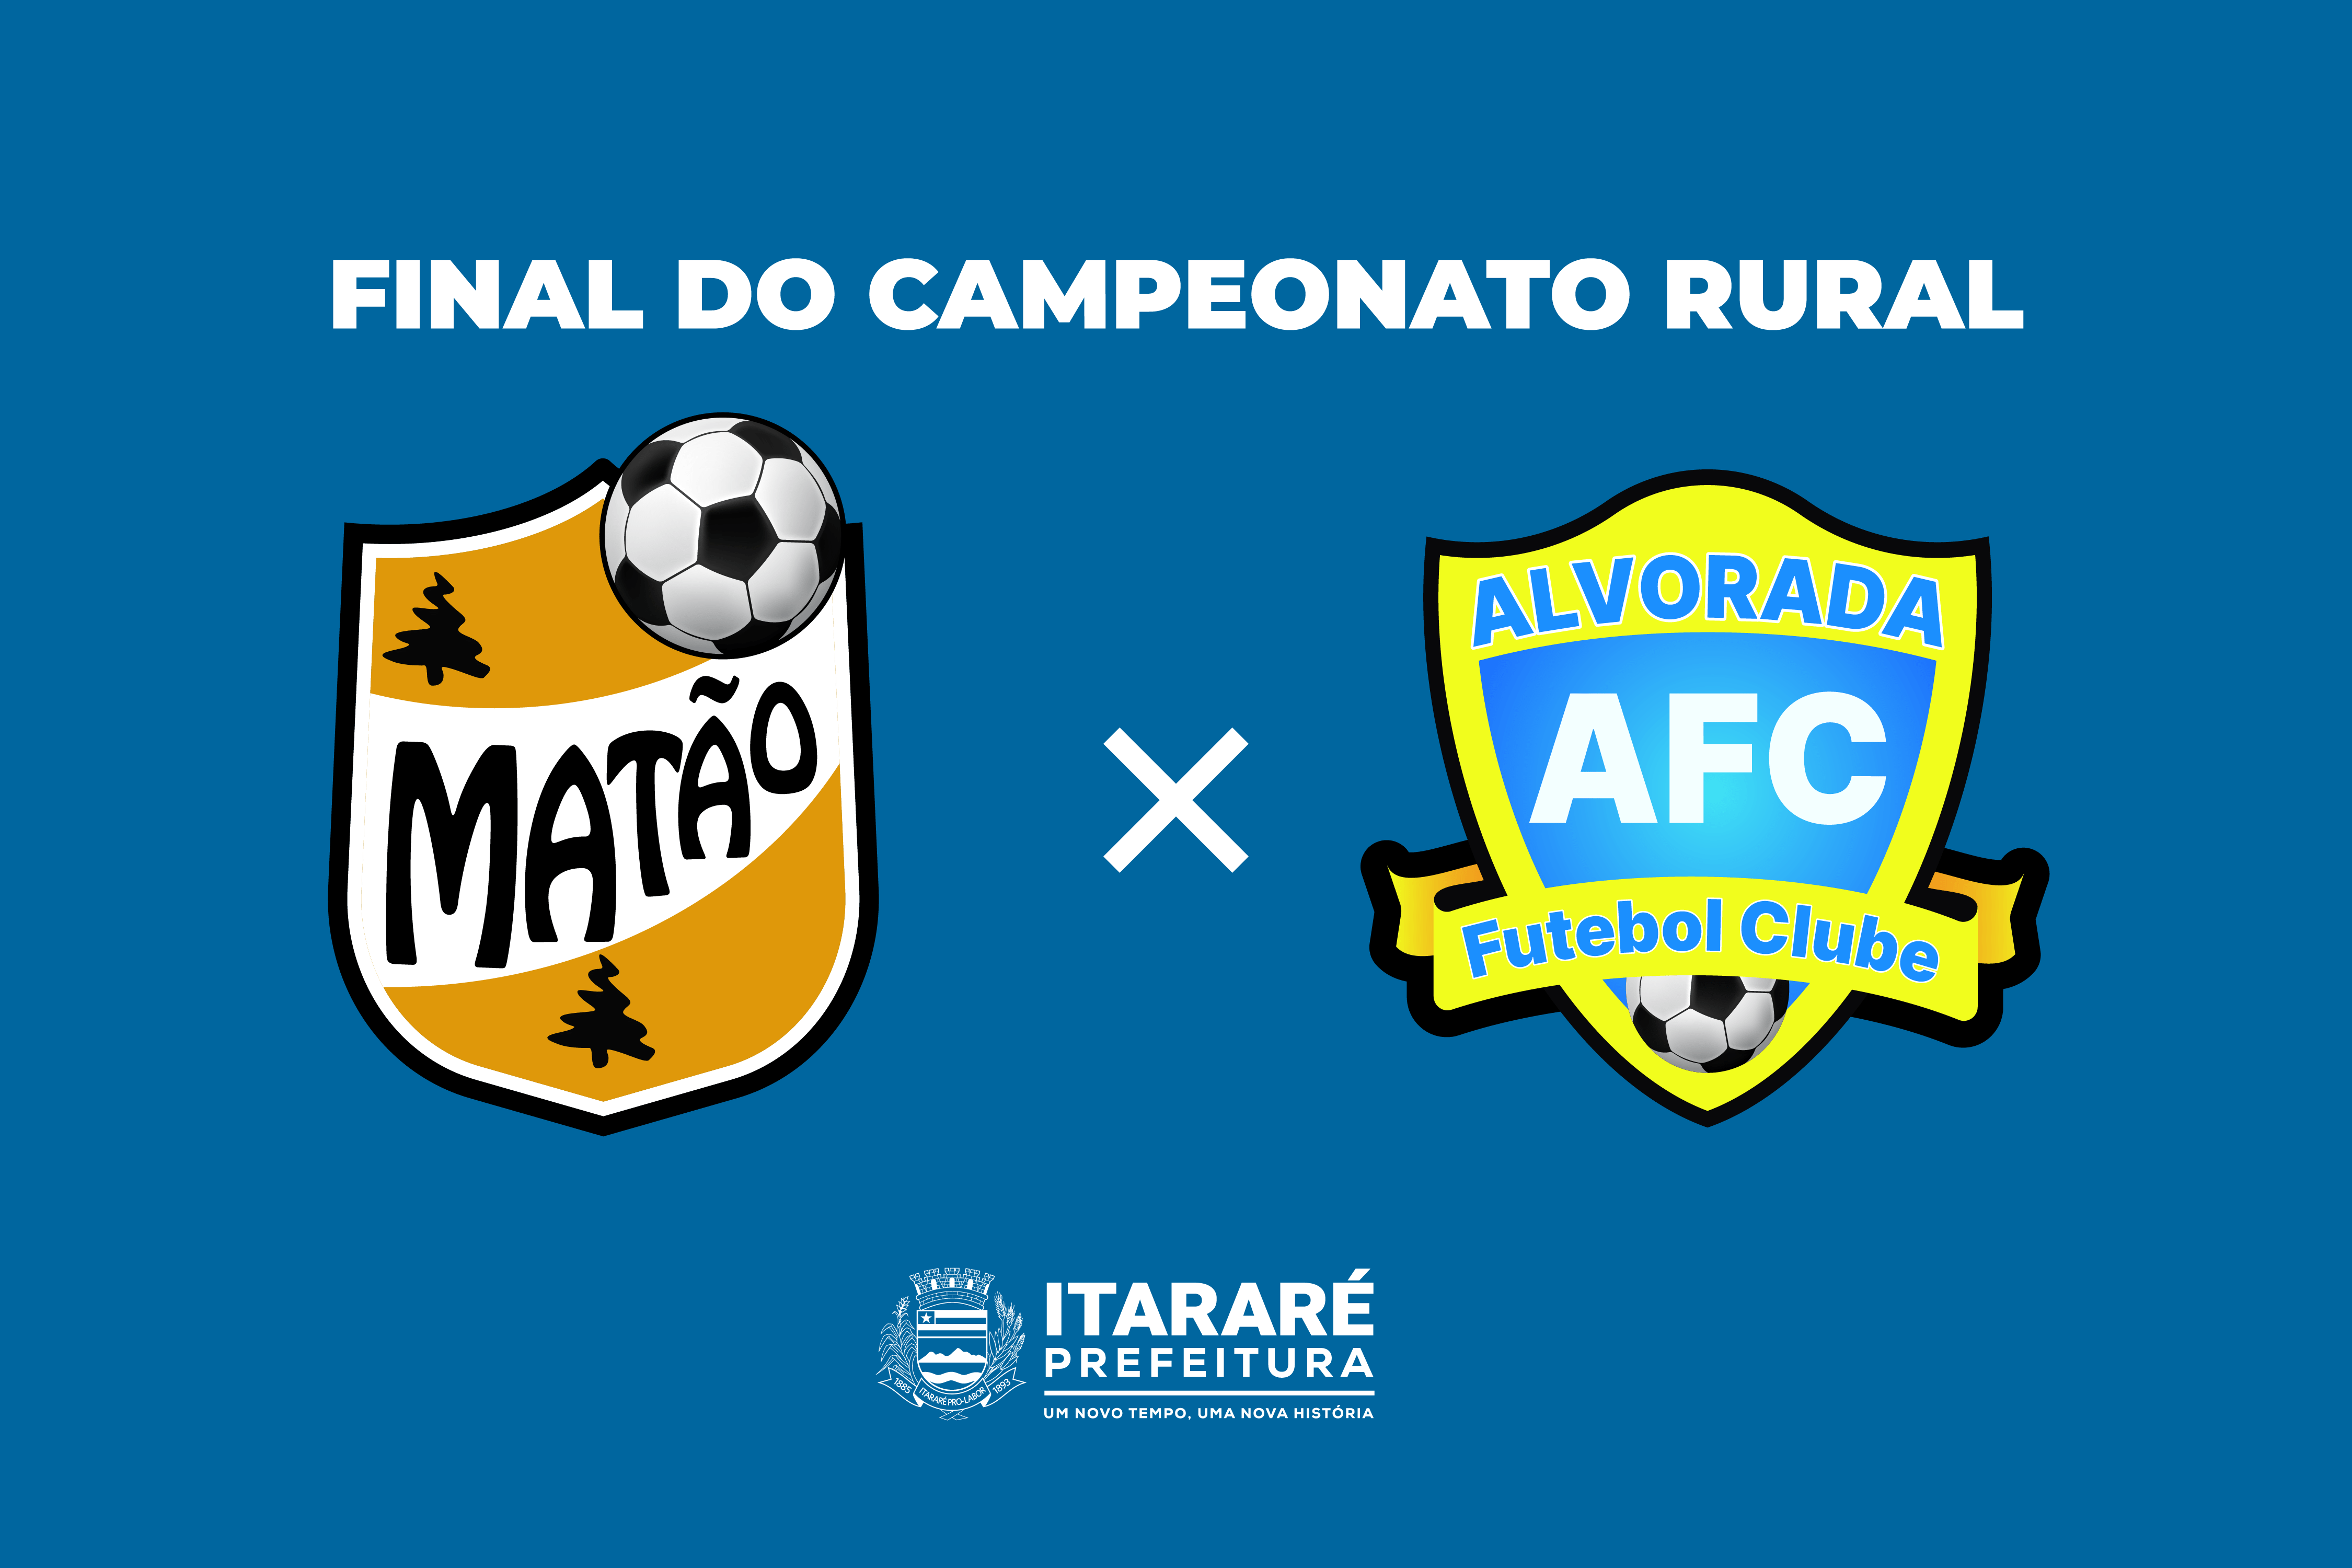 Alvorada Pinheirão e Matão Livre disputam o título do Campeonato Rural de Futebol de Itararé (SP) 2022